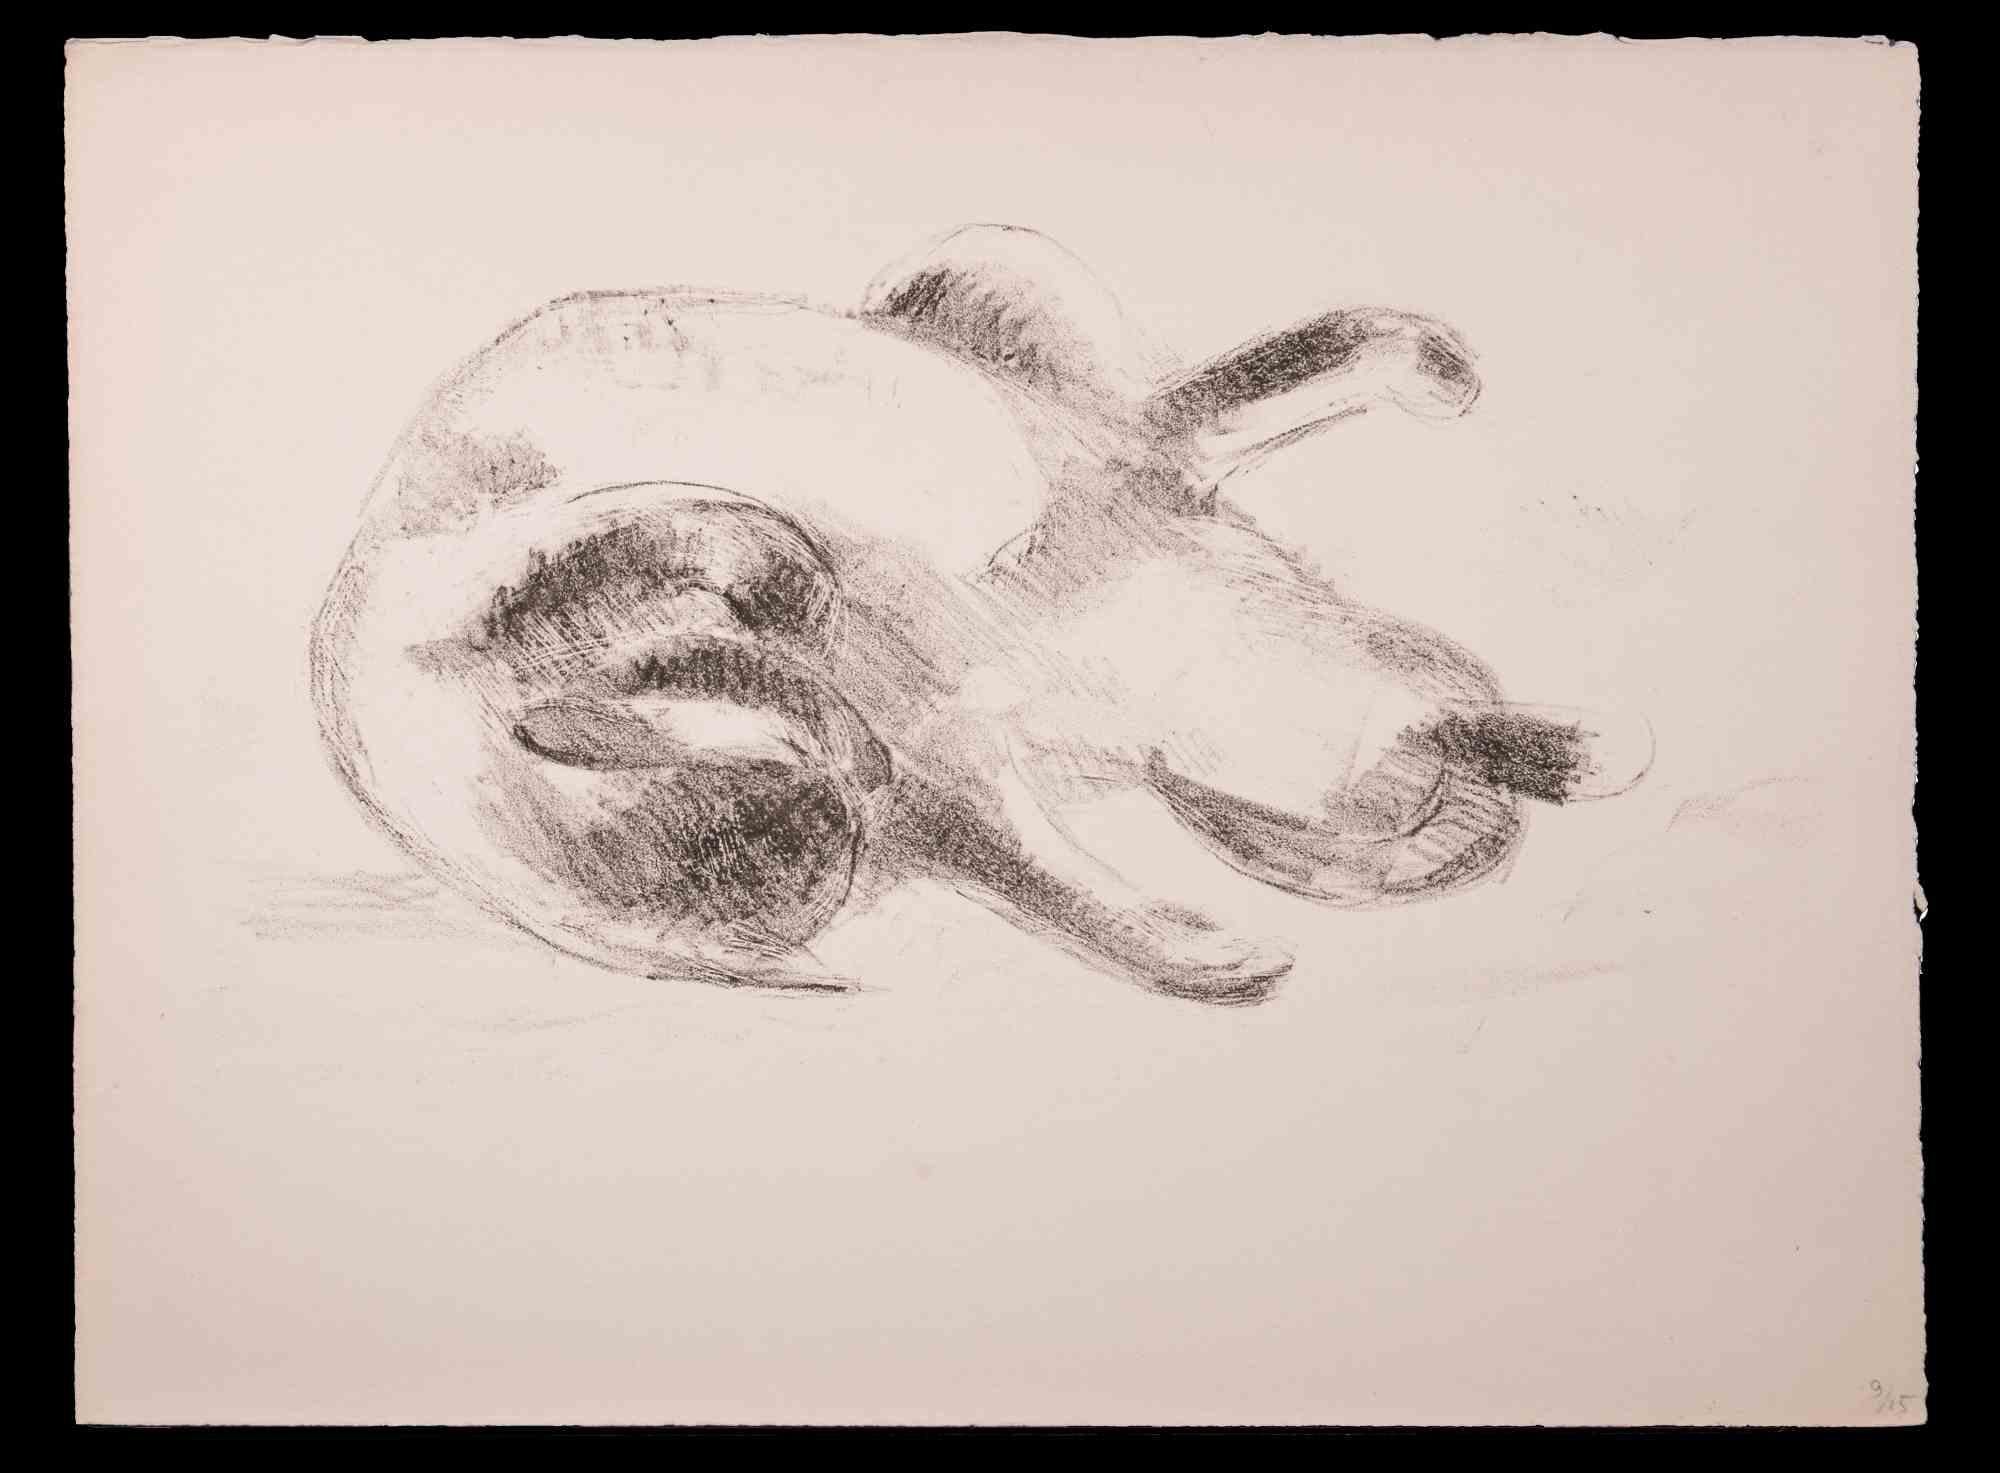 Chat est un dessin original au fusain réalisé par Giselle Halff (1899-1971).

Bonnes conditions.

Giselle Halff (1899-1971) née à Hanoi, élève de R.X. Prinet, R. Ménard, L. Simon, B. Boutet de Monvel. Peintre et dessinateur d'animaux.